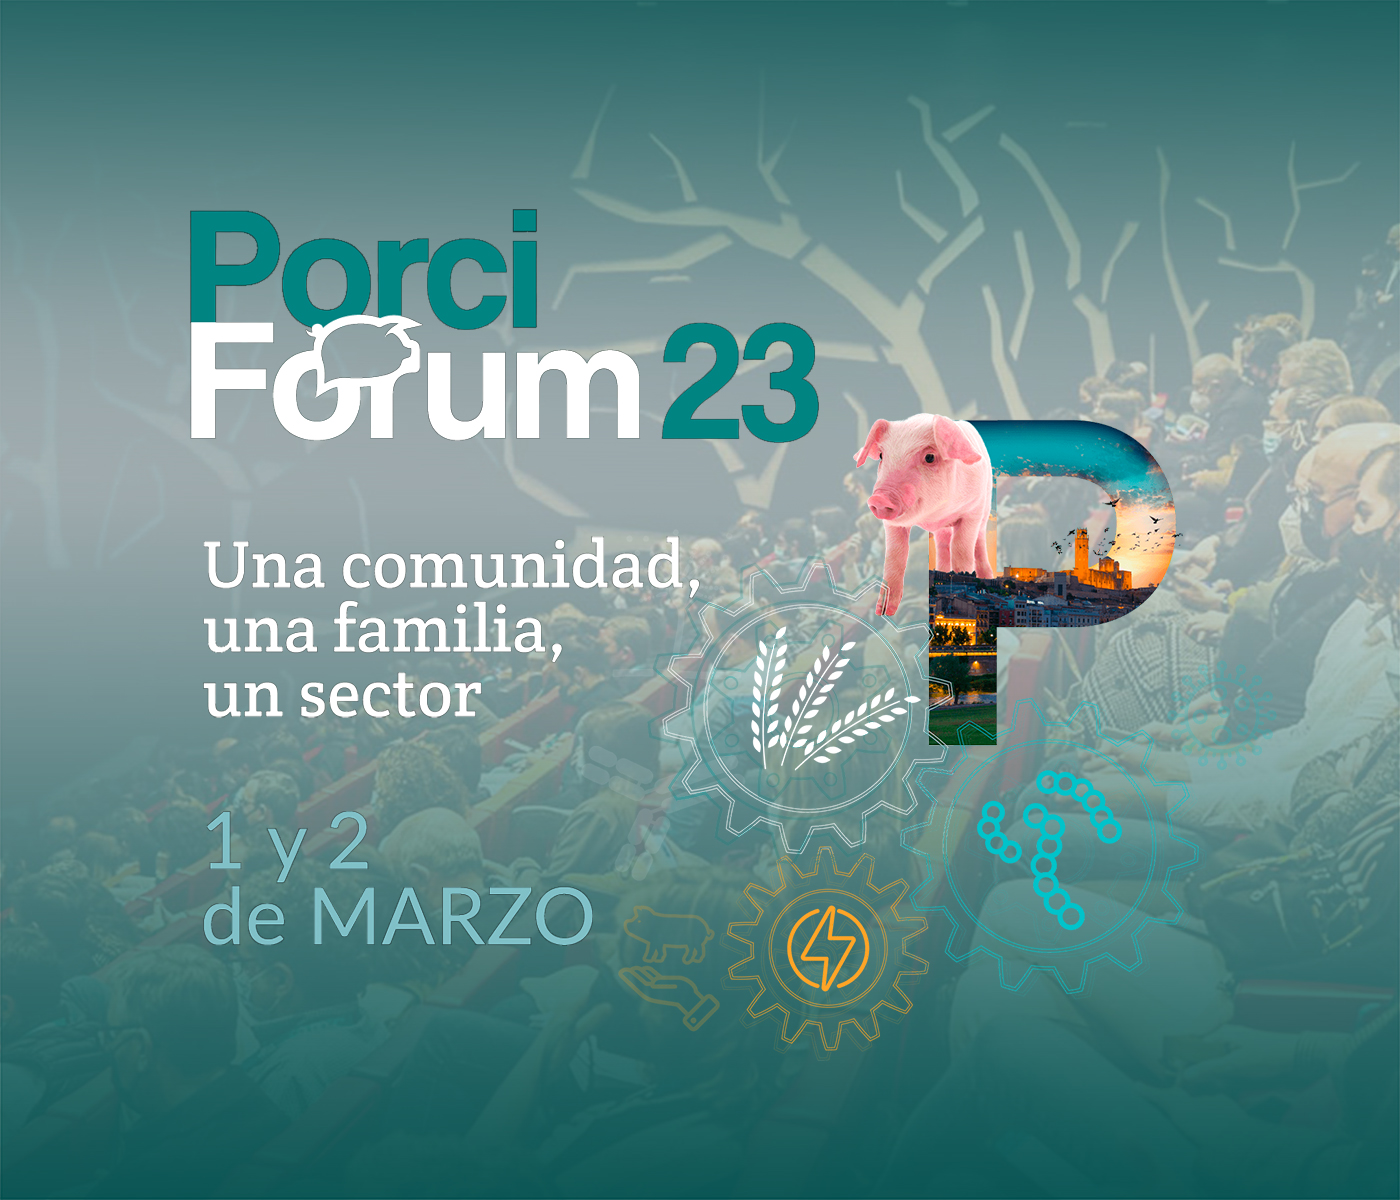 Entramos en la recta final del porciFORUM 2023, el foro por excelencia del sector porcino español